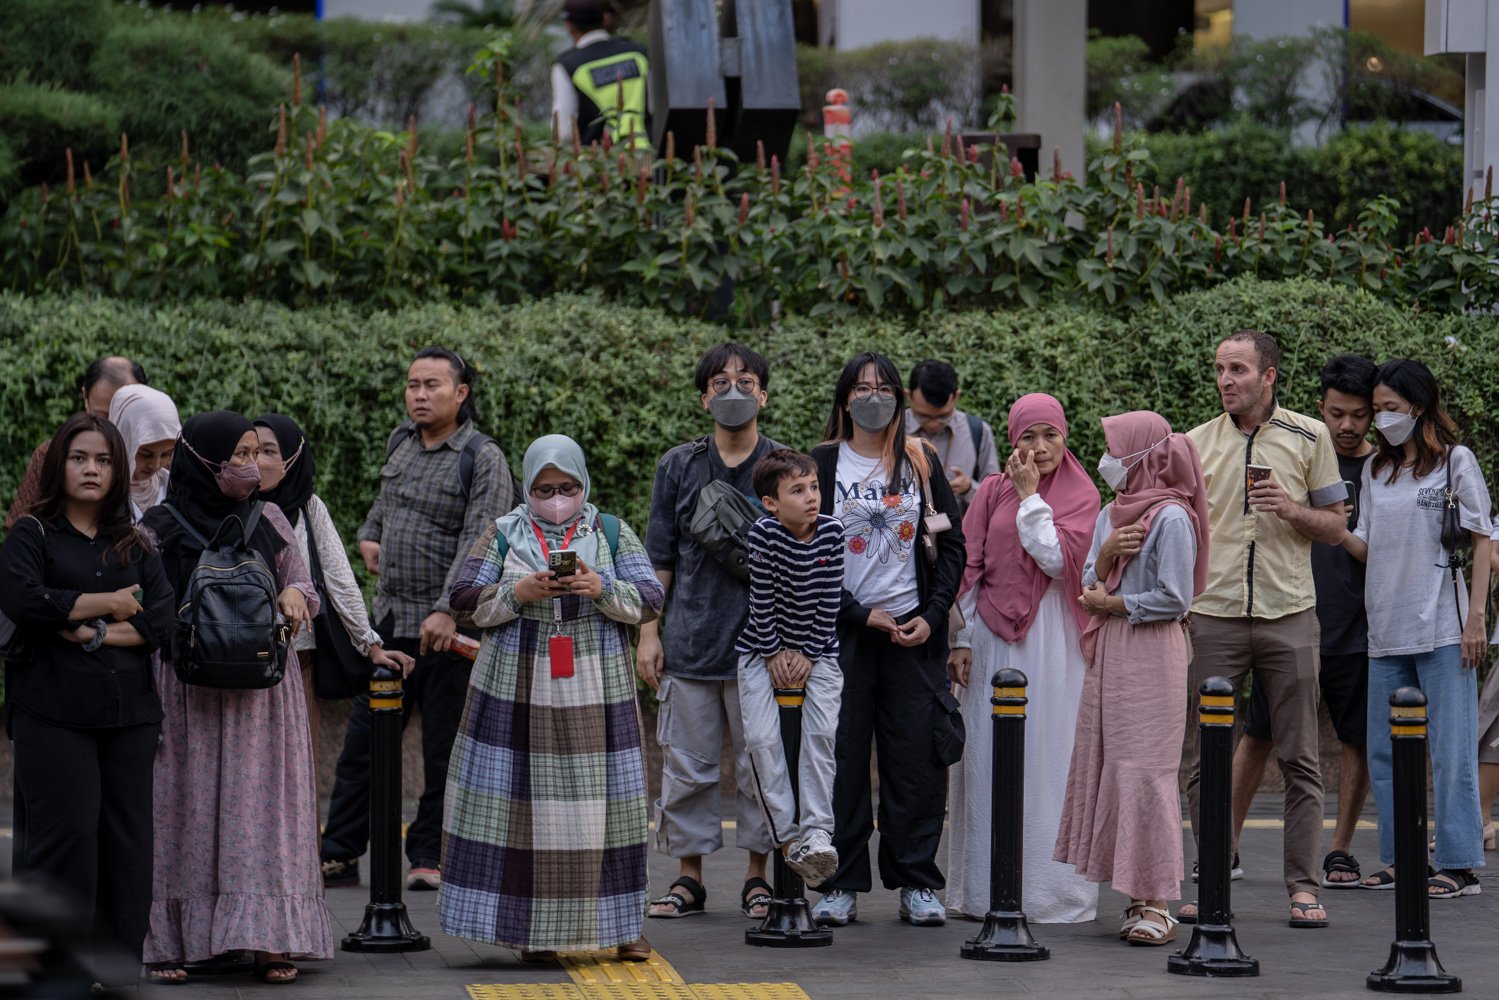 Warga beraktivitas di luar ruangan di sekitar Jalan MH Thamrin, Jakarta Pusat, Senin (14/8). Sebagian besar warga terlihat mengenakan masker. Seminggu terakhir ini polusi udara di Jabodetabek menjadi sorotan masyarakat. Kualitas udara di Jakarta masuk kategori tidak sehat.